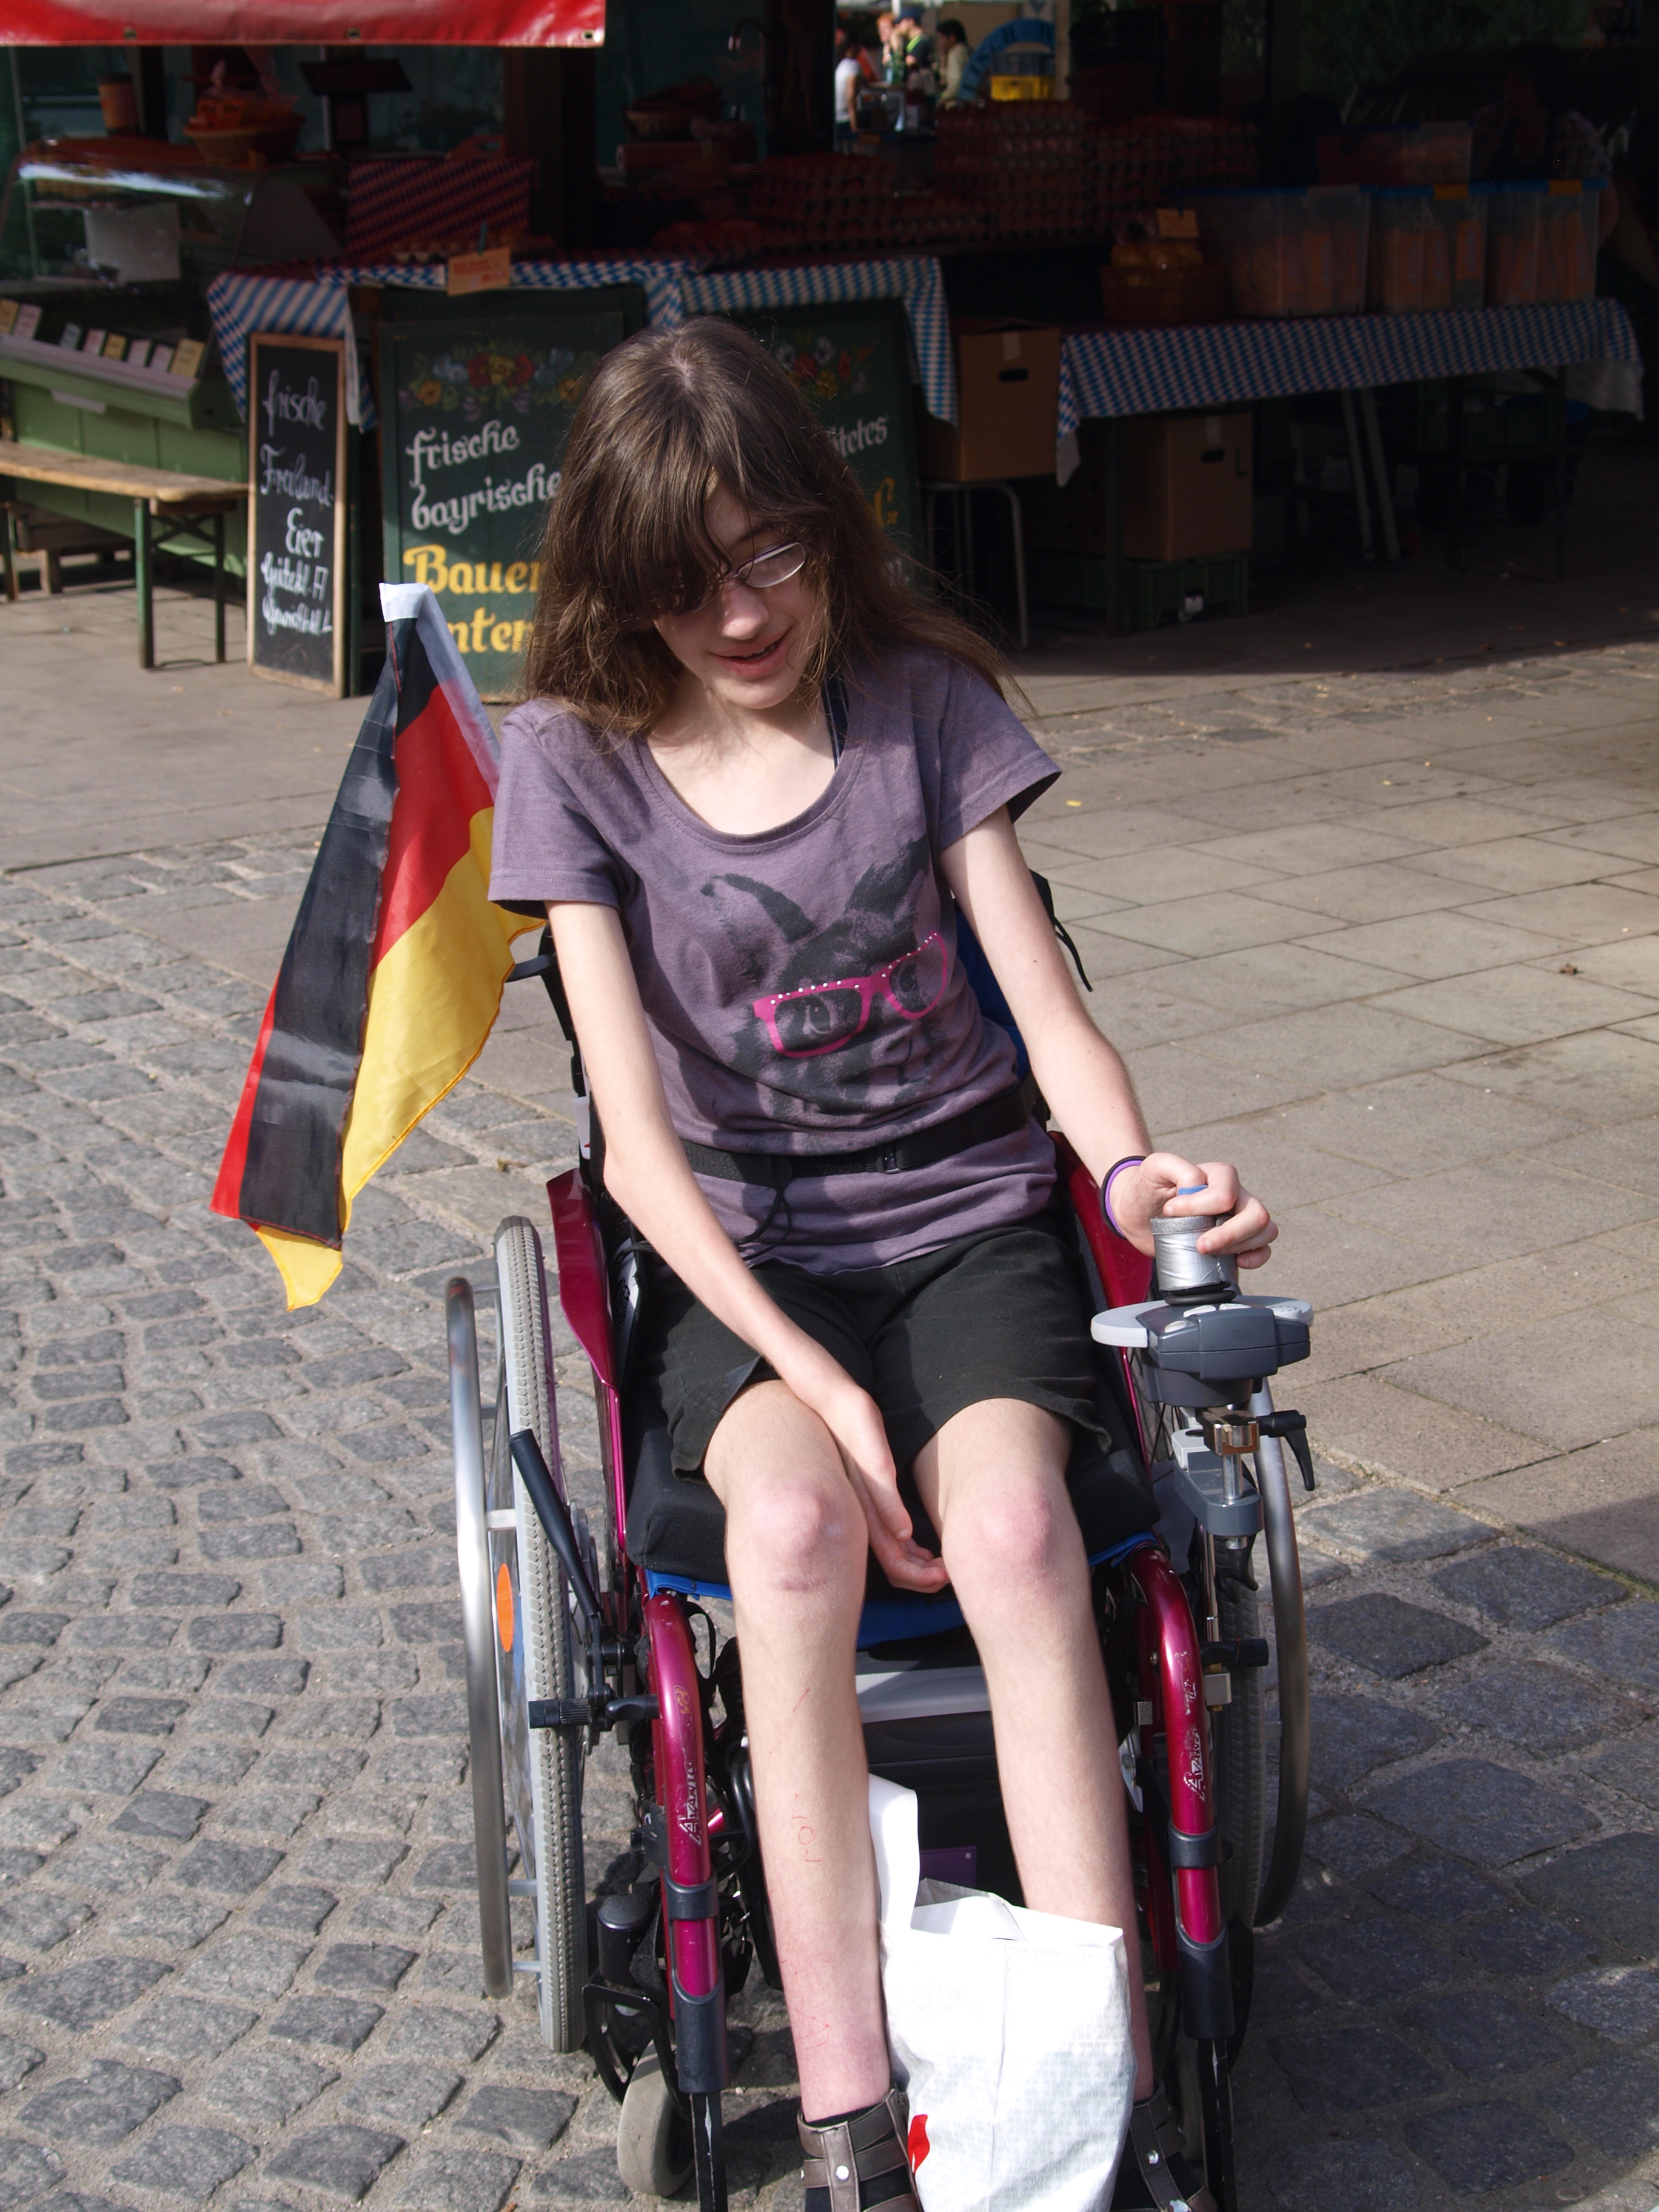 Jugendliche-Version (ca. 14 Jahre alte) von Laura fährt in einem Aktiv-Rollstuhl mit Motor-Antrieb durch eine Straße in München. Auf dem Fußbrett, zwischen den Füßen transportiert sie eine Tüte. Hinten am Rollstuhl hängt eine Deutschland-Fahne.